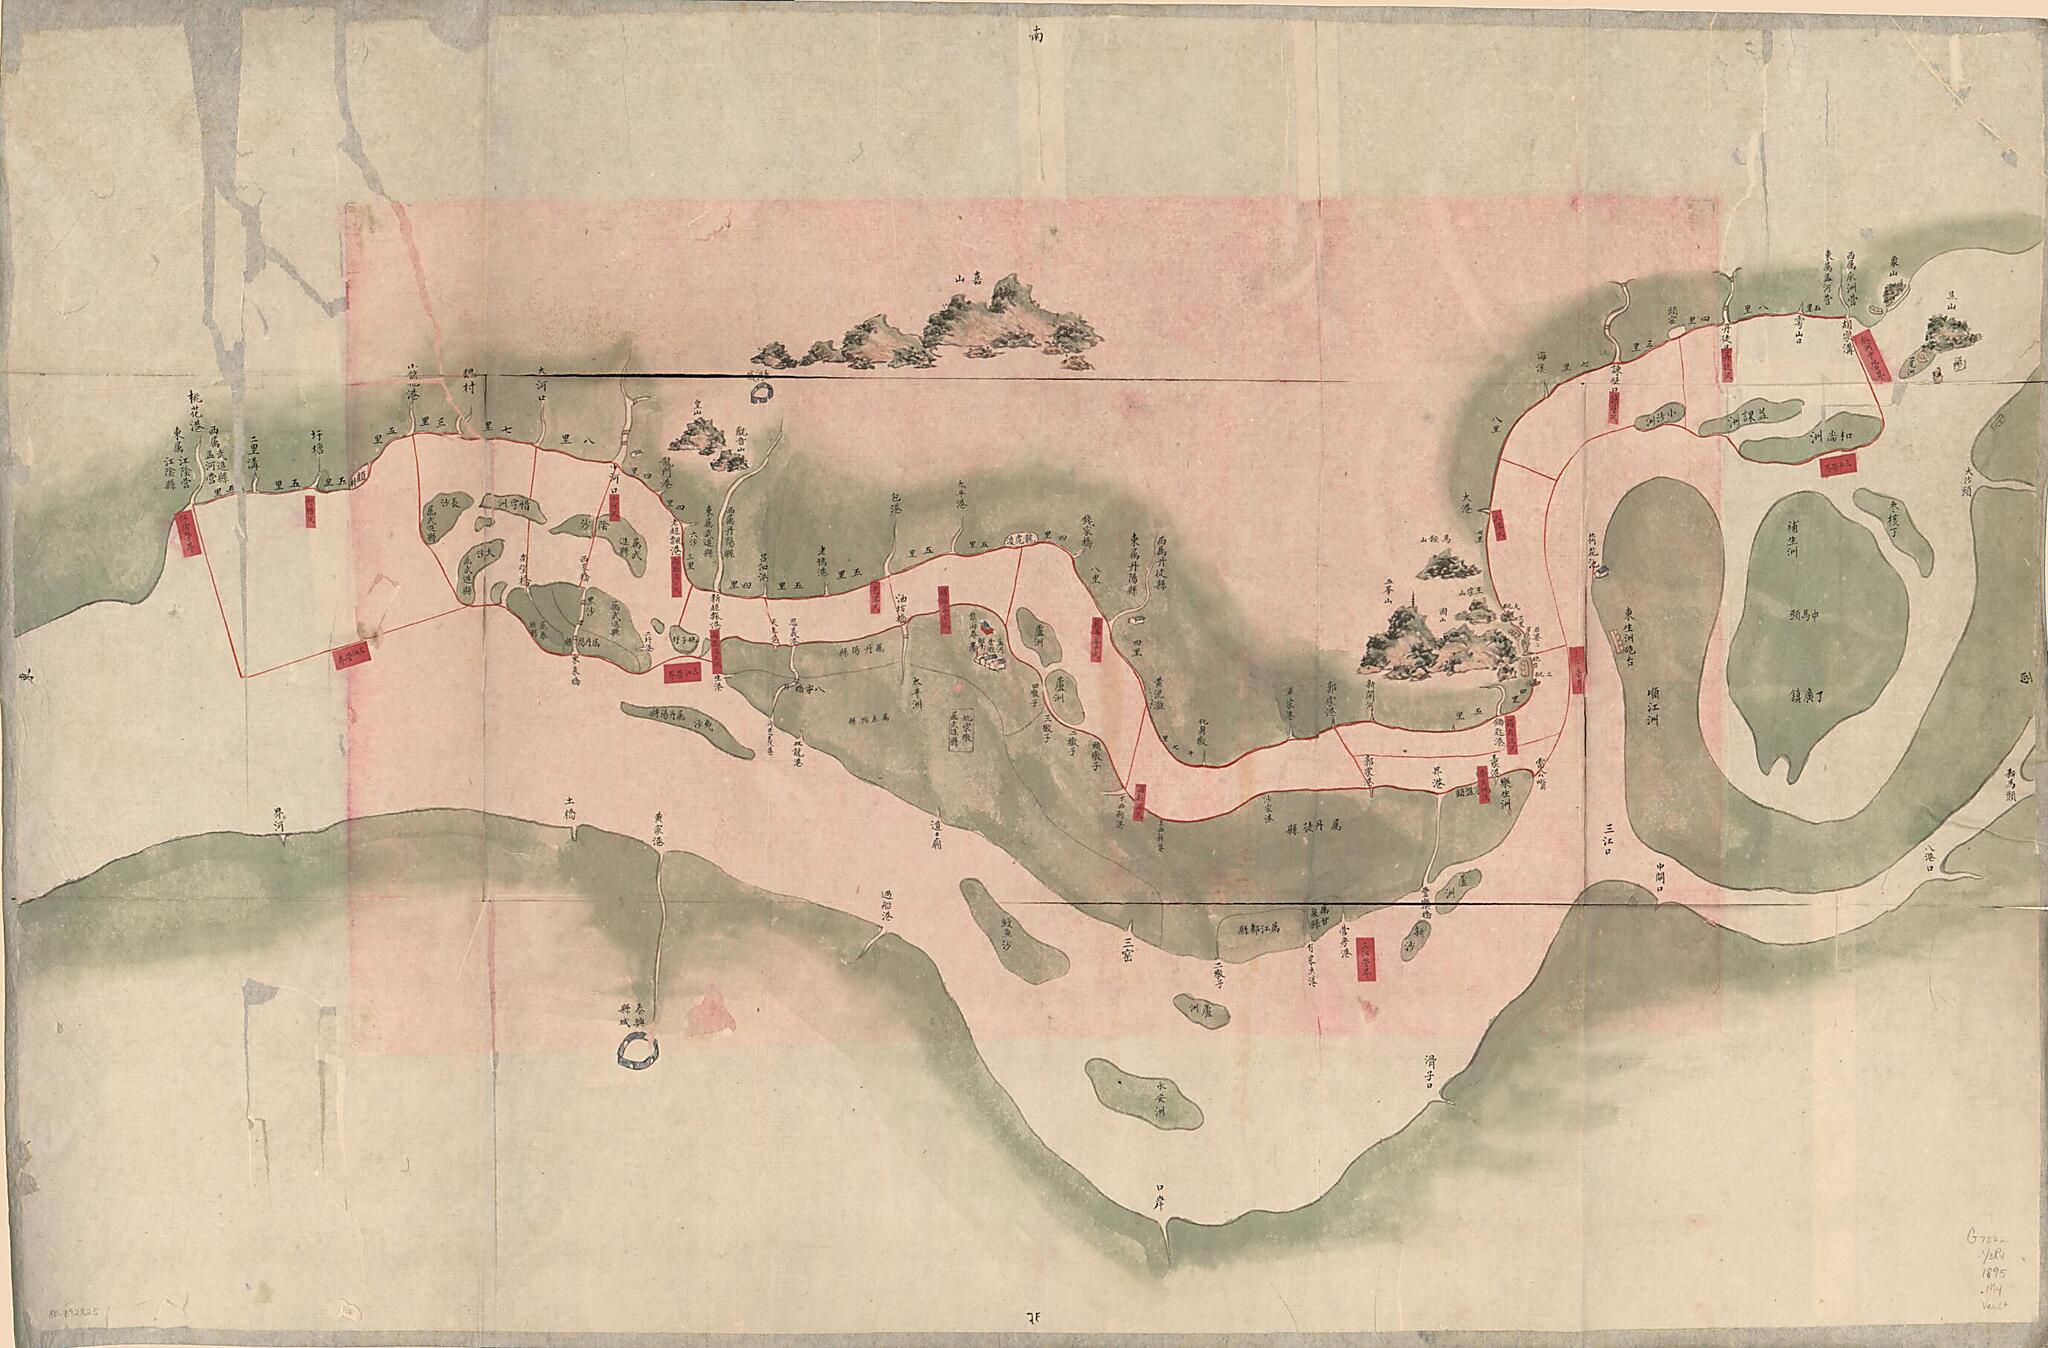 This old map of Meng Heying Hui Cheng Beiying Xun Jing Jiang Cheng Li Shu Jie Zhi Tu. (孟河營繪呈卑營汛境江程里数界址图, Military Map of the Menghe Naval Brigade In Yangtze River) from 1864 was created by  in 1864